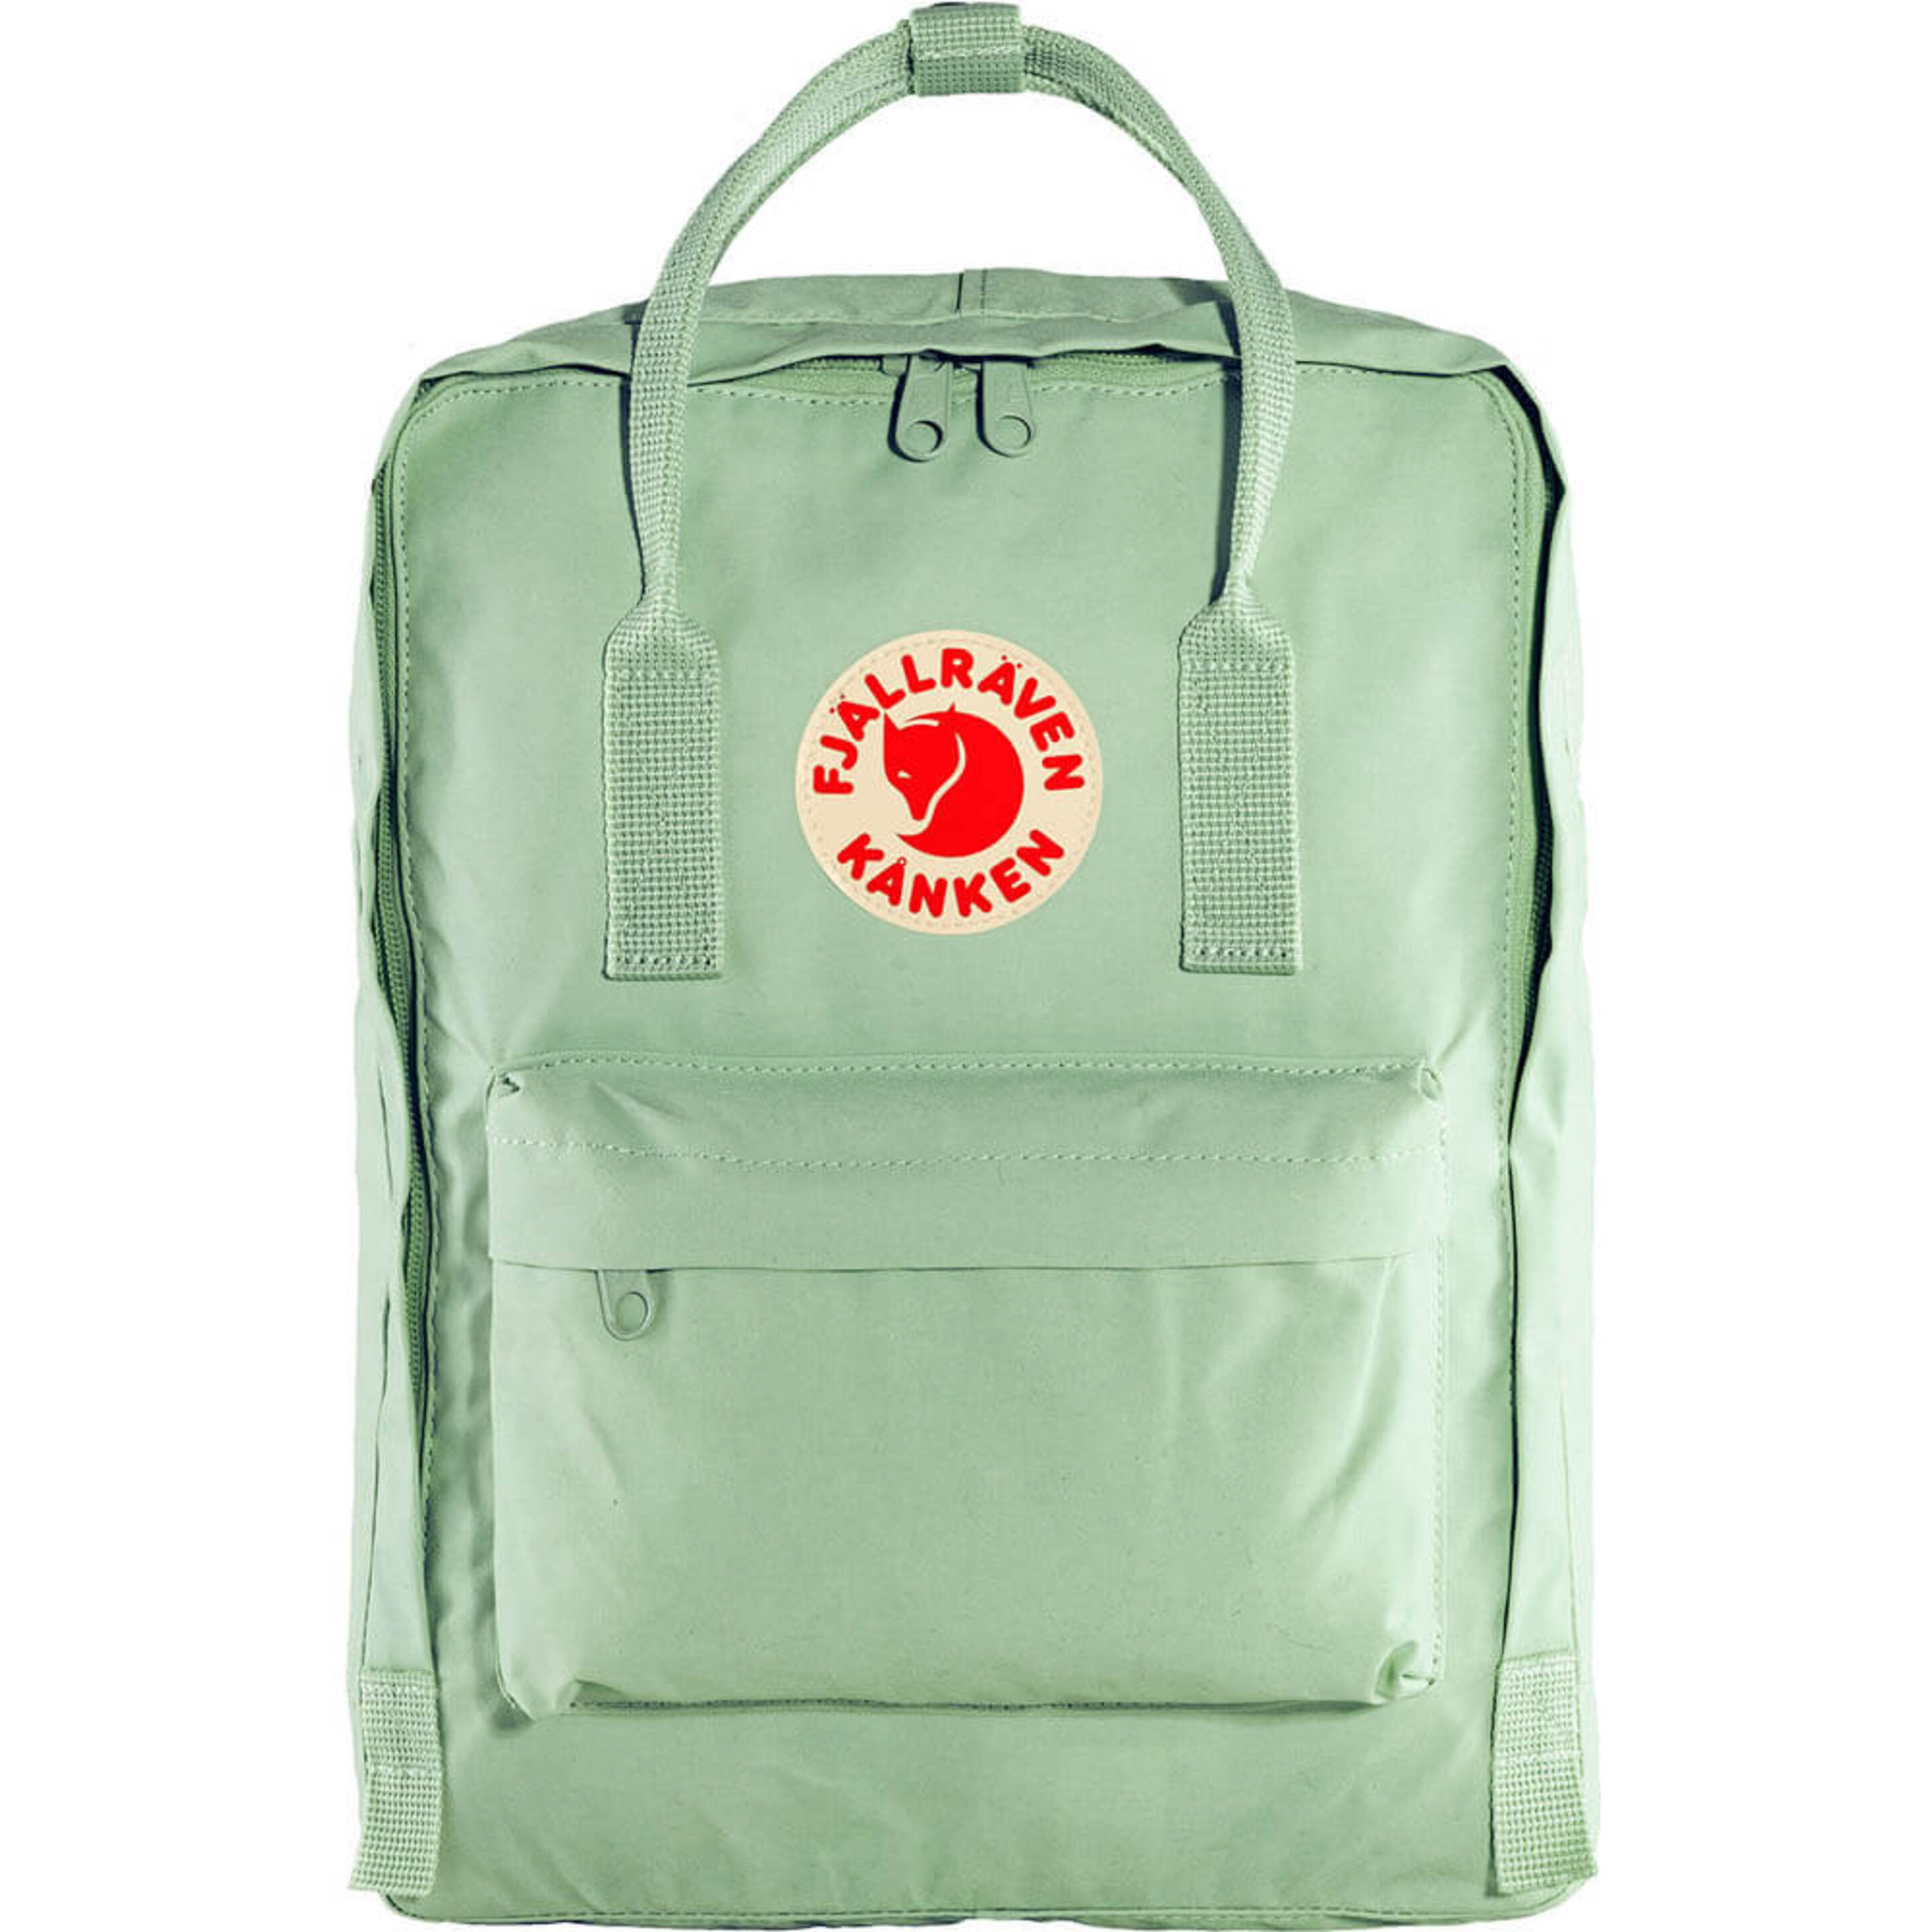 Fjallraven Kanken Sports Backpack, Unisex-adult, Mint Green, One Size - multicolor - 